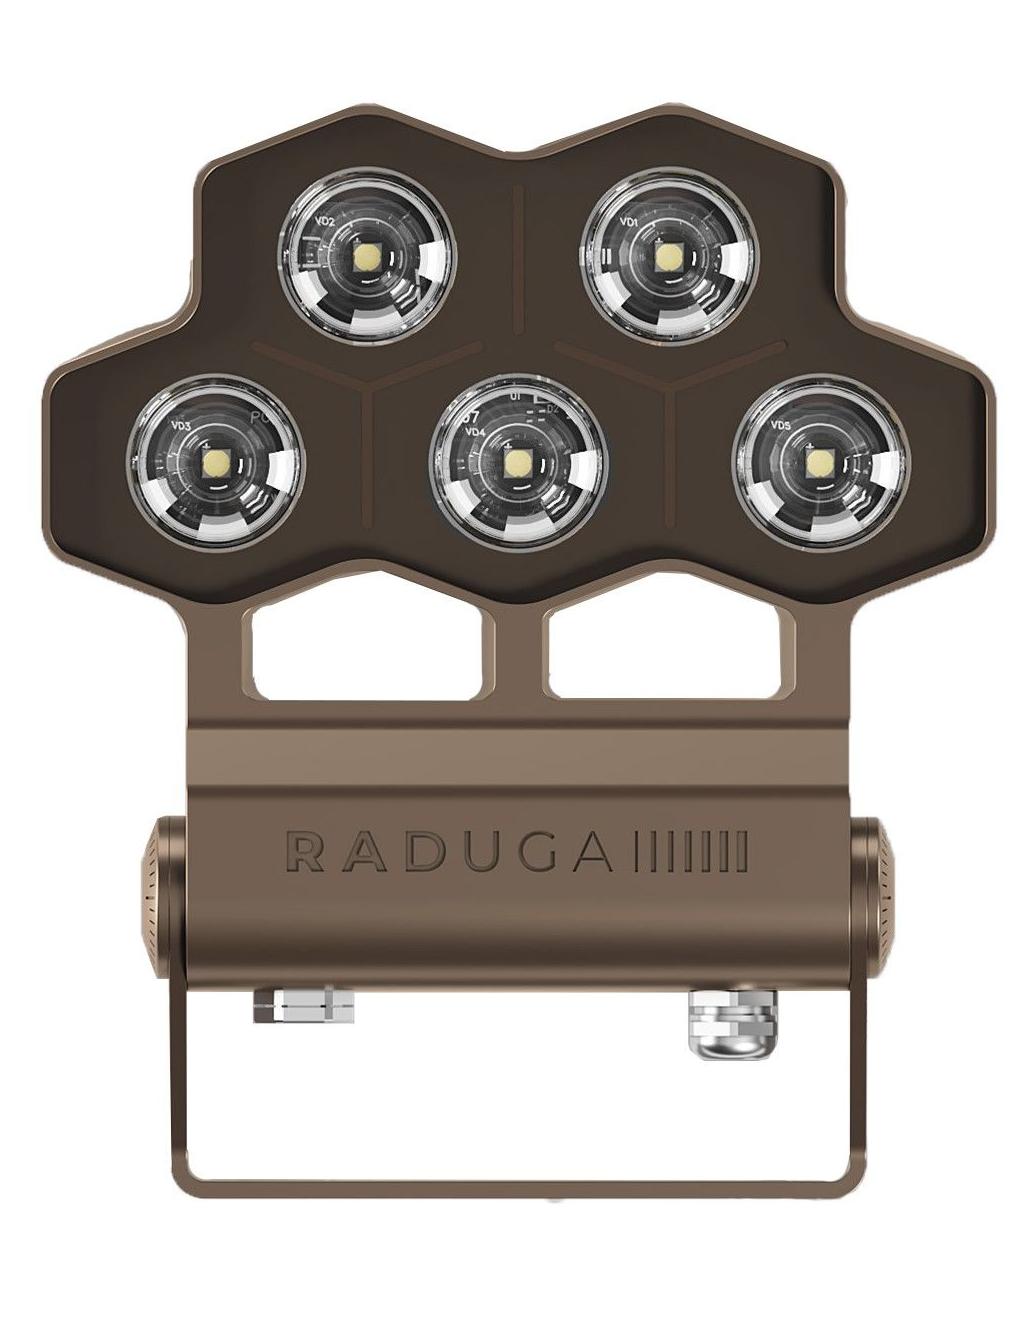 Купить прожектор светодиодный LED.  Прожектор архитектурный на фасад бренда RADUGA. - Купить прожектор светодиодный LED.  Прожектор архитектурный на фасад бренда RADUGA.